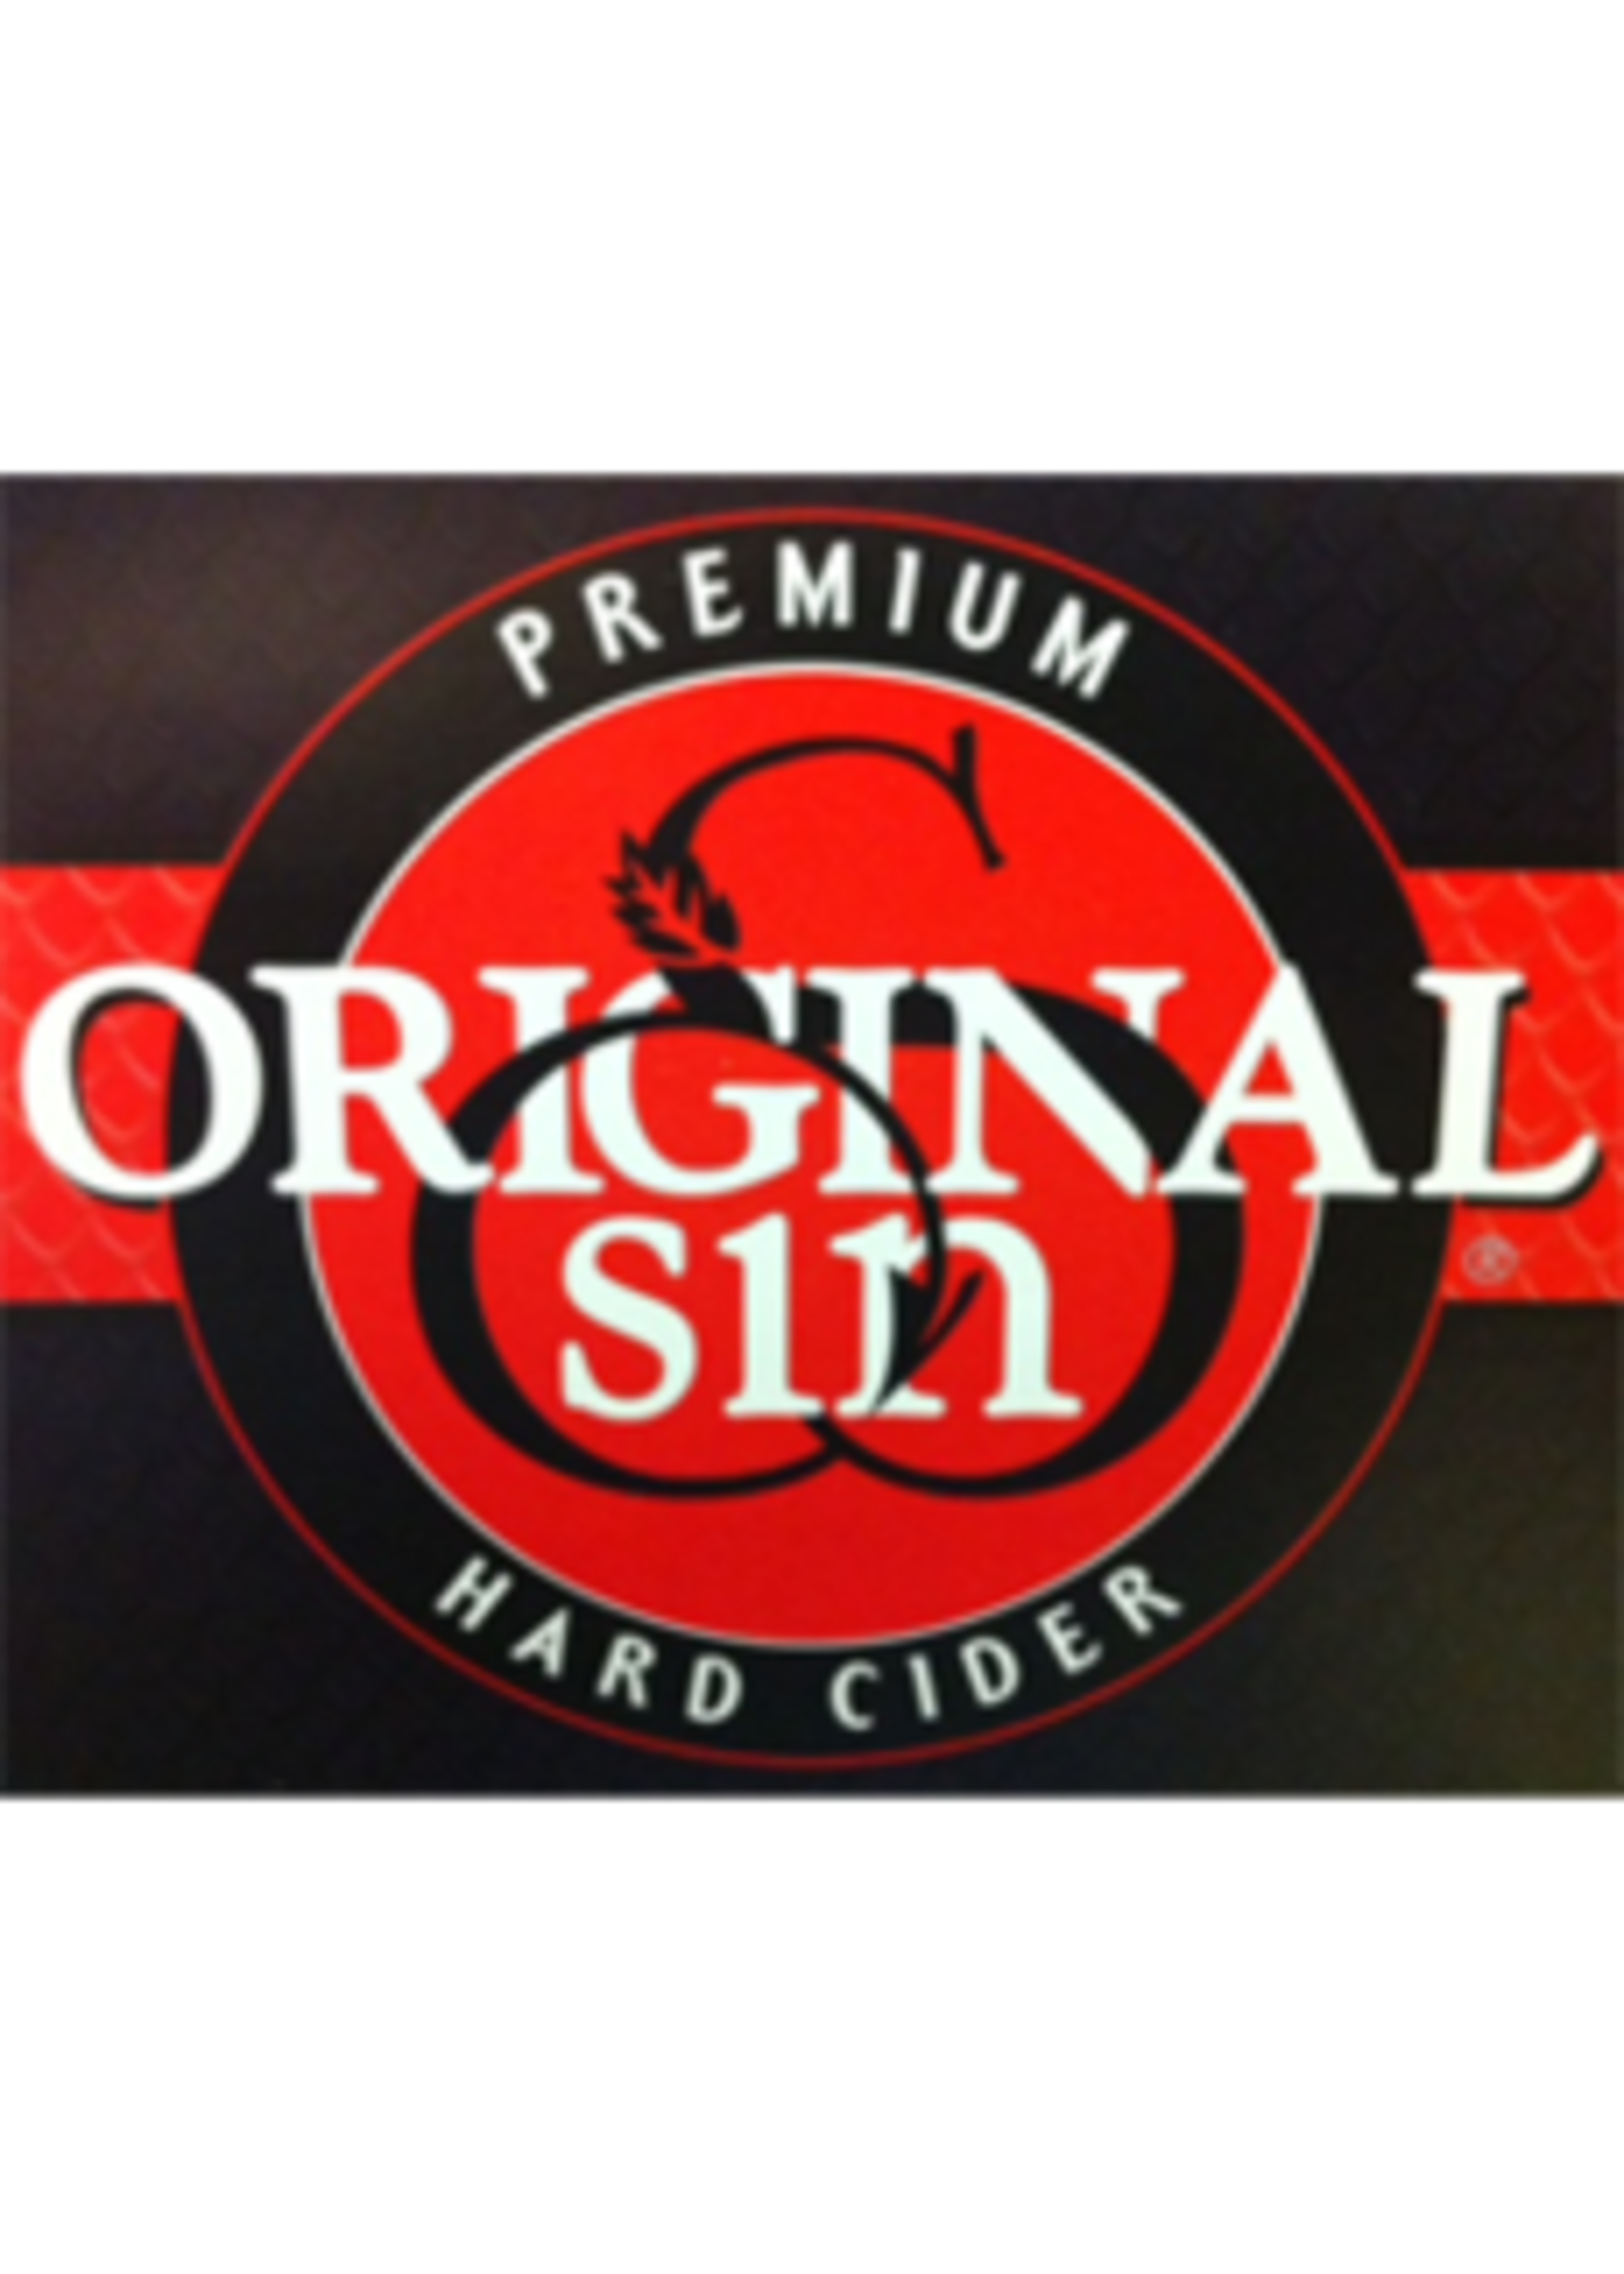 Original Sin Original Sin Cider / Hard Cider / 6pack 355mL can